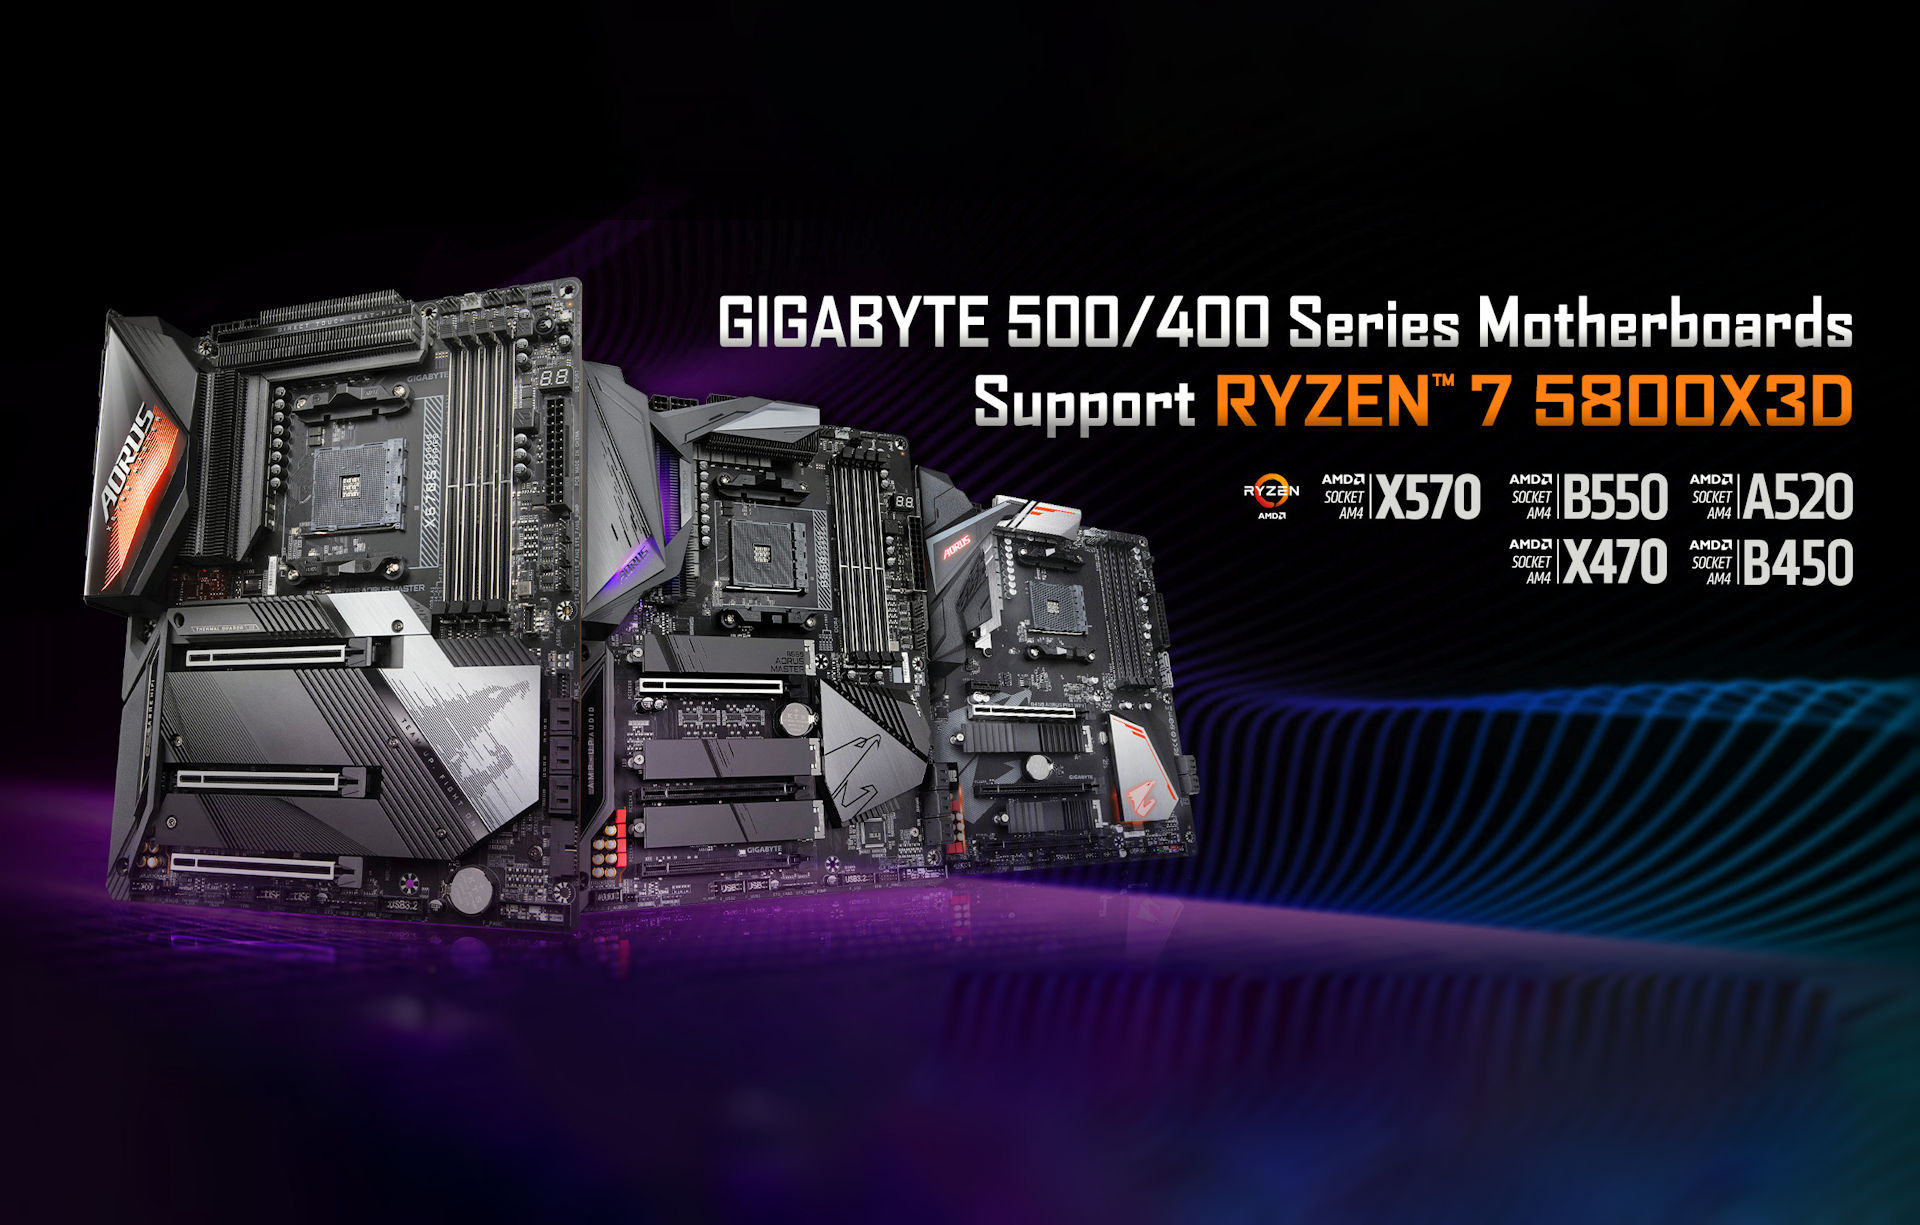 Gigabyte wydaje BIOS dla płyt głównych AMD z serii 500/400 z obsługą procesorów Ryzen 7 5800X3D